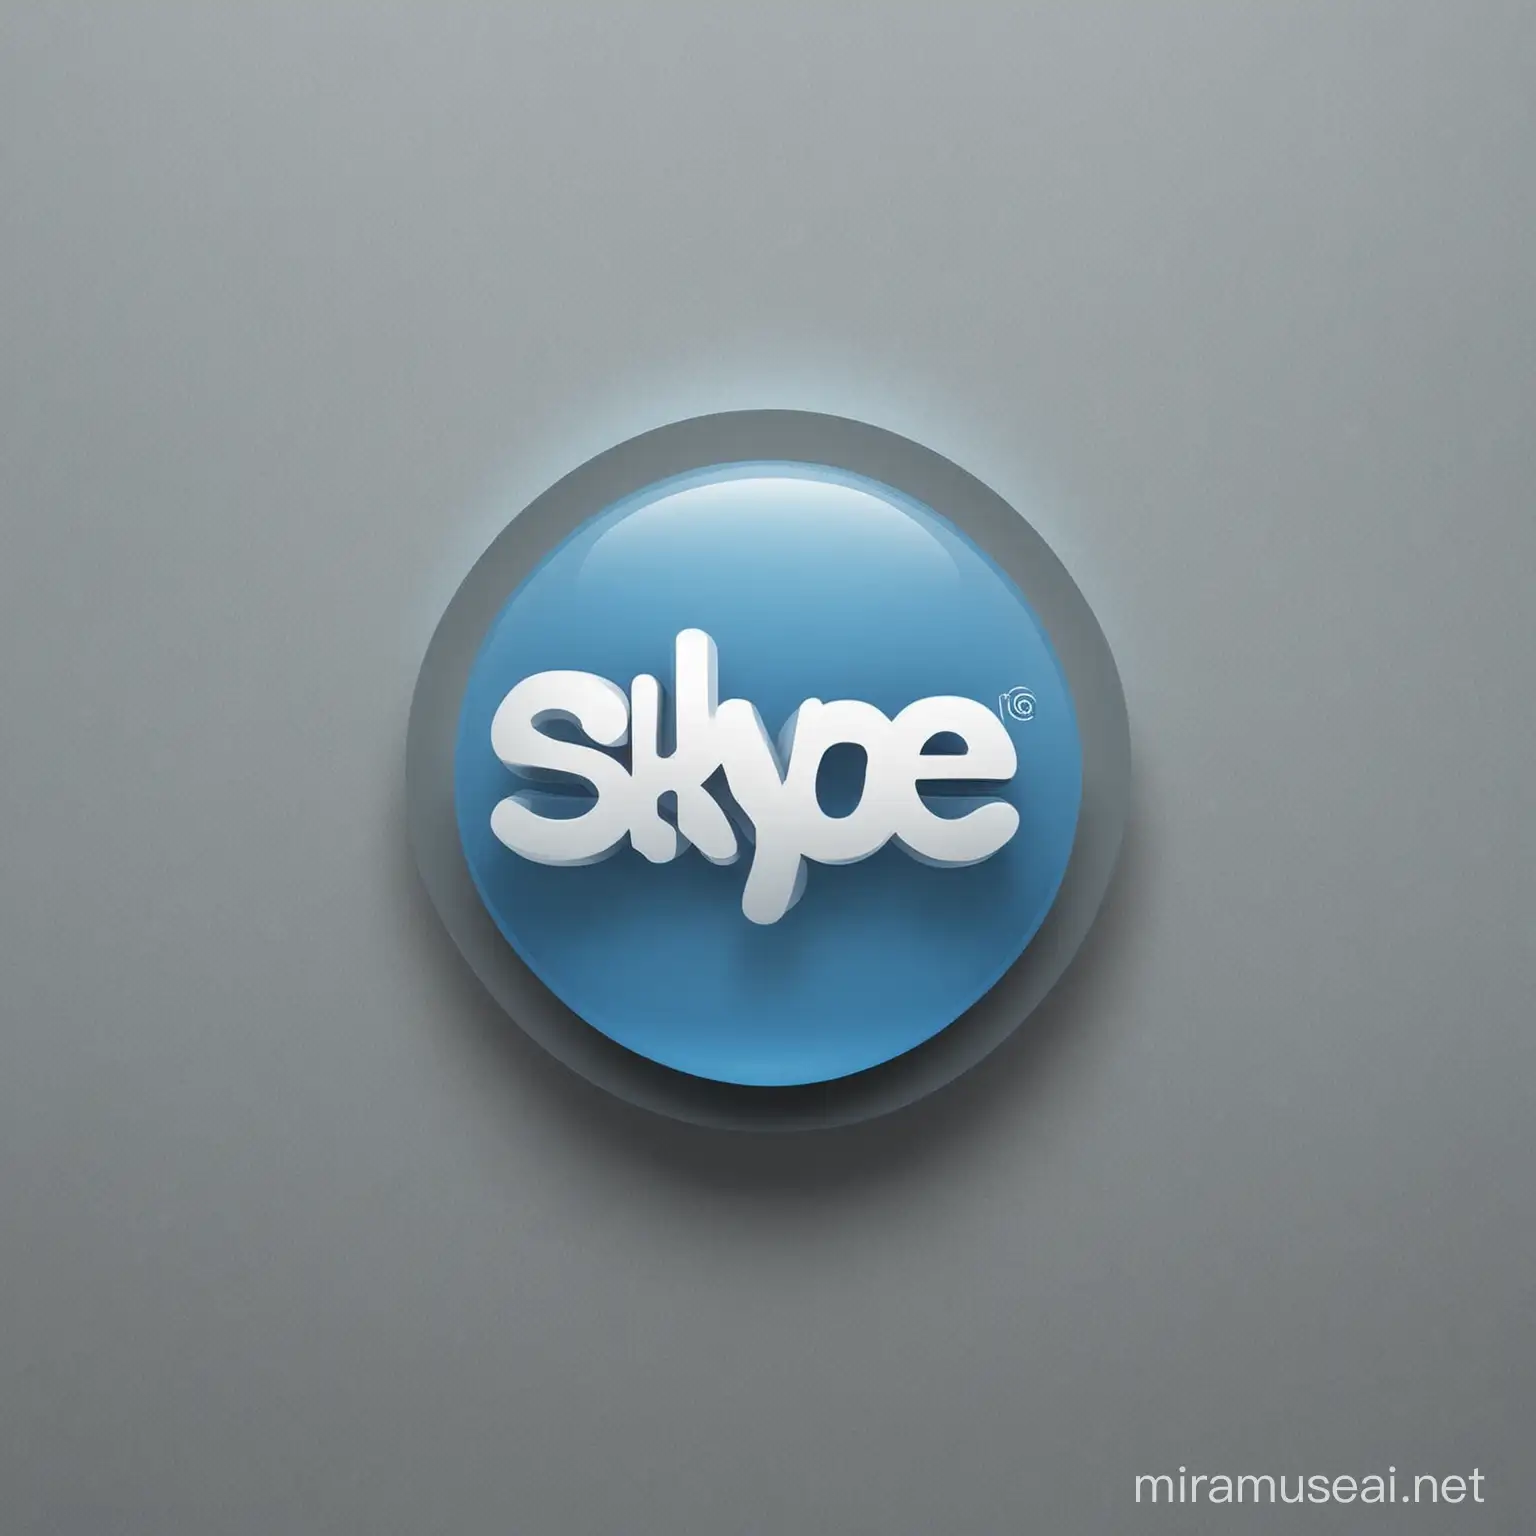 create a skype logo for portfolio